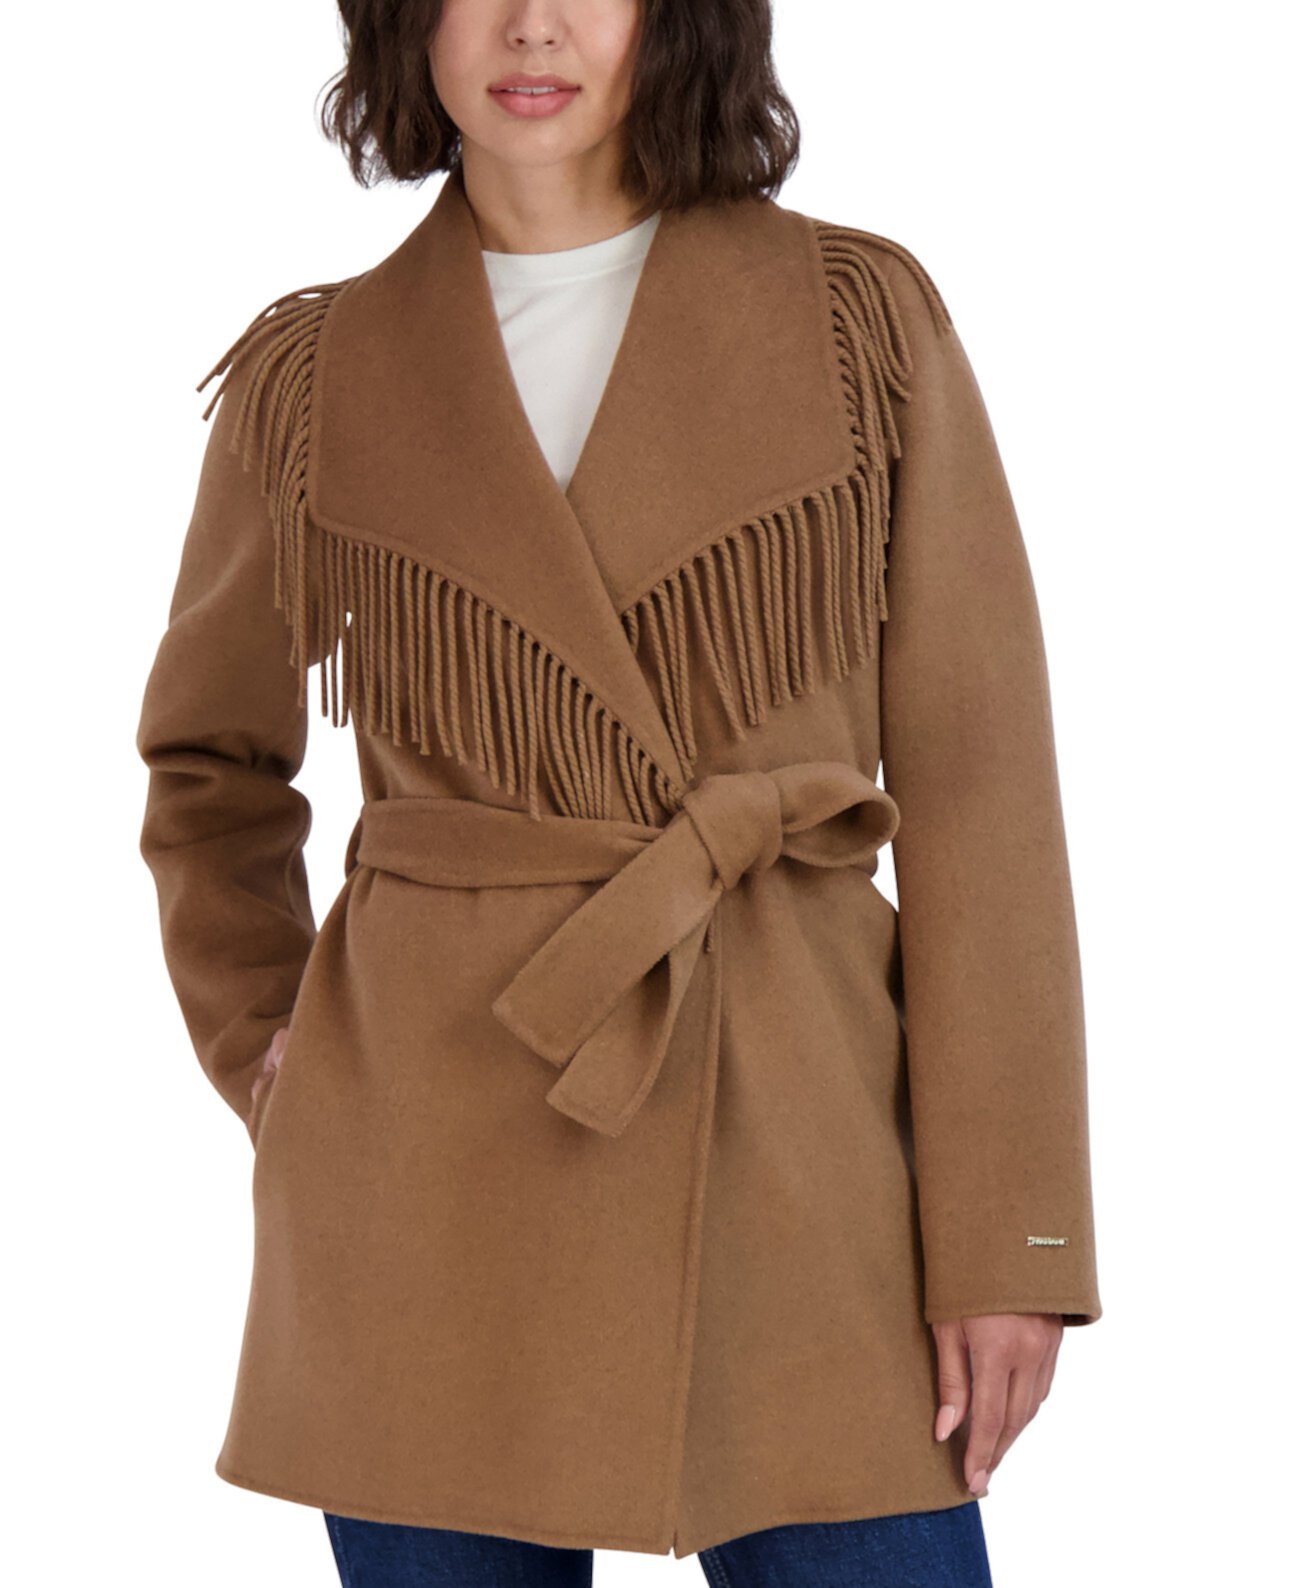 Женское пальто Frankie с поясом и отделкой бахромой Tahari